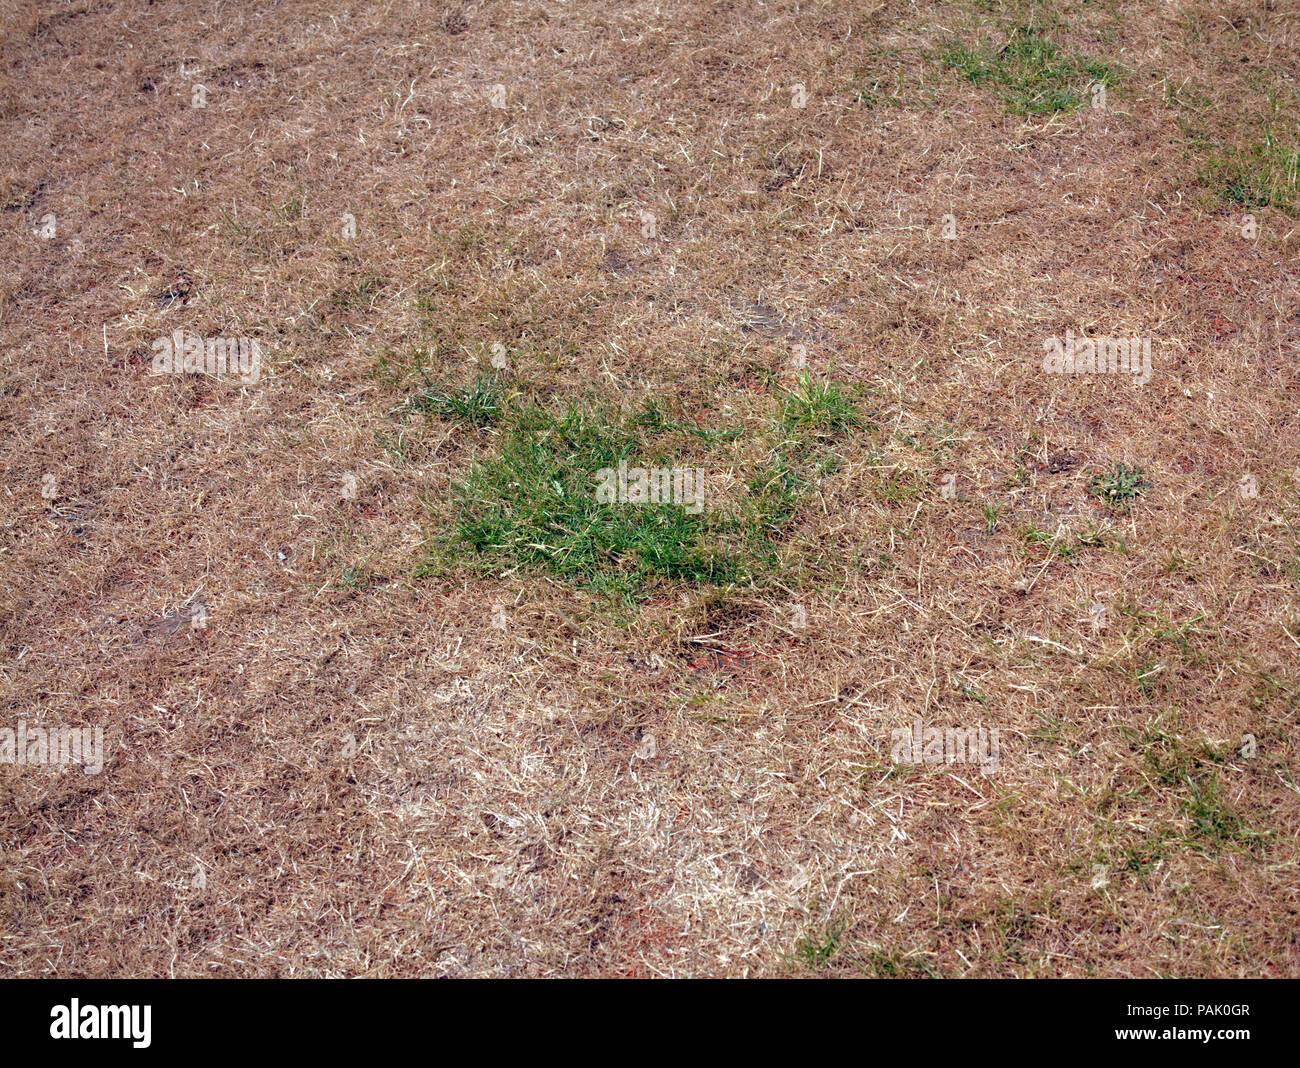 Sommer 2018 einer der trockensten überhaupt mit einem Patch von grünem Gras auf dem ausgetrockneten Rasen Stockfoto